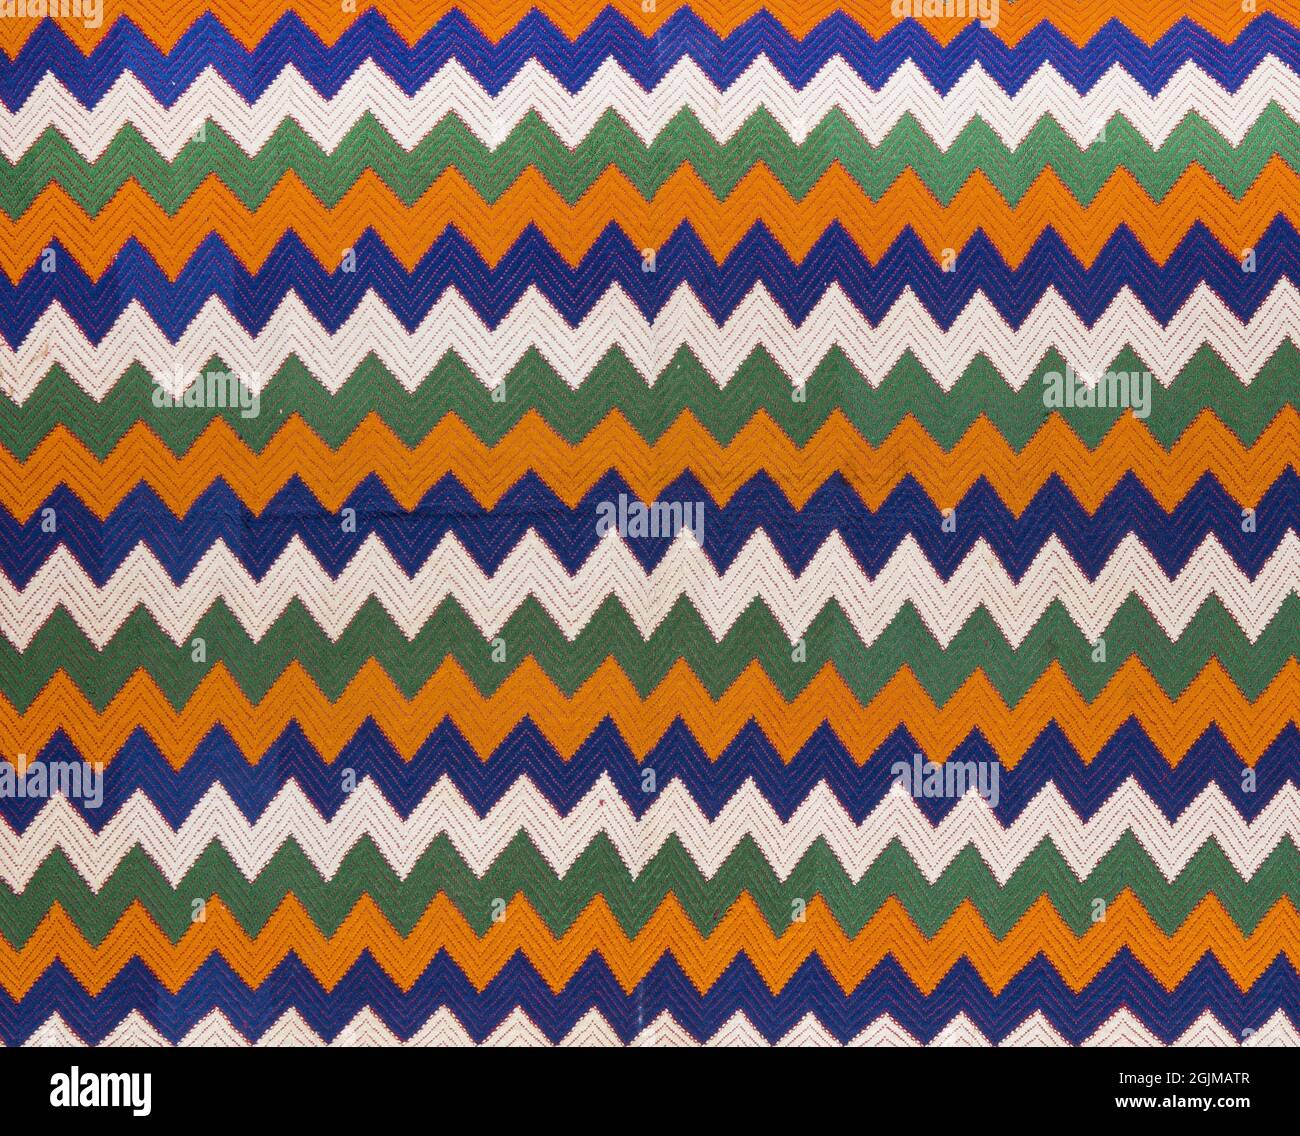 Detalle de una tela tejida llamada una zut de Almolonga, Guatemala. Los diseños incluyen brocado de trama supplemenary de zigzags multicolores. Toques de la decoración ikat en la tela de tierra Foto de stock